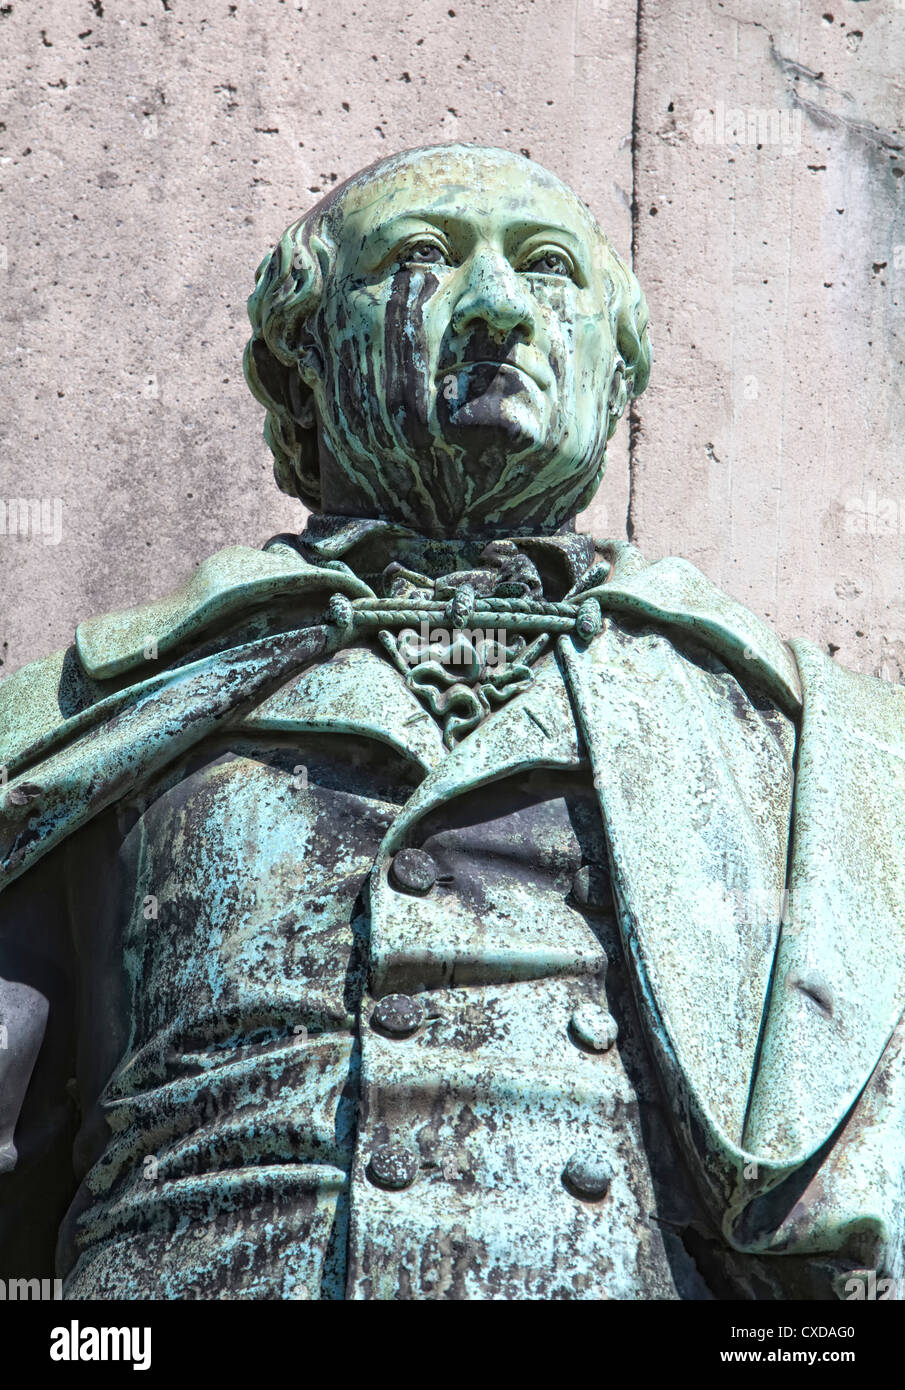 Statue de Karl Sigmund Franz Freiherr vom Stein zum Altenstein, 1770-1840, homme politique prussien, Cologne, Germany, Europe Banque D'Images